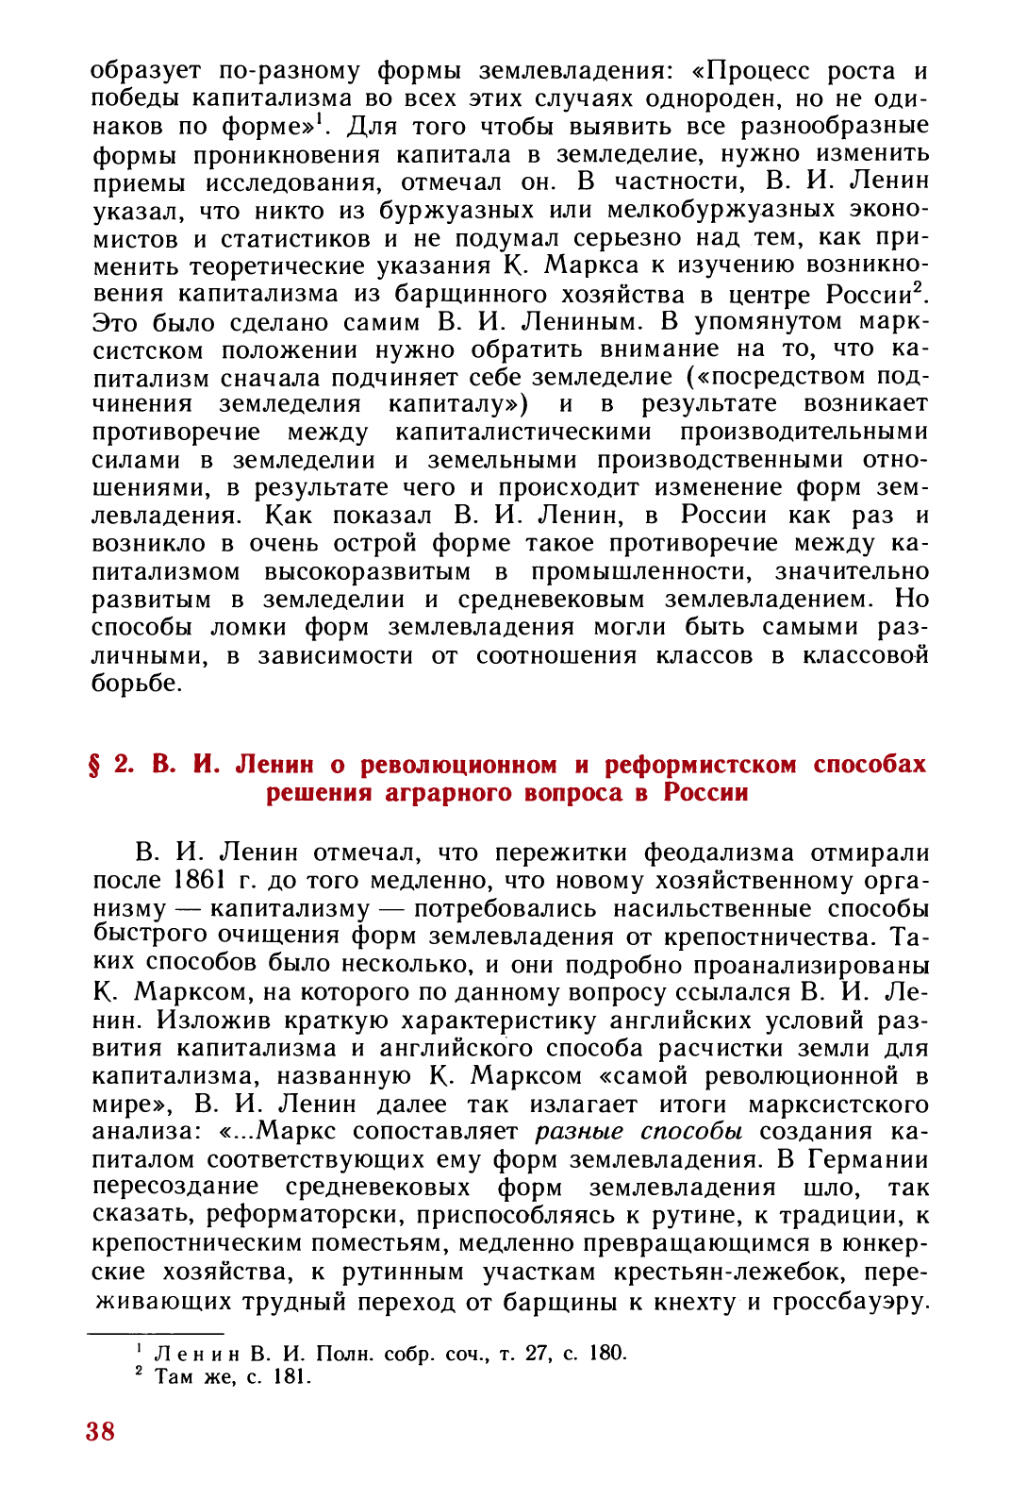 § 2. В. И. Ленин о революционном и реформистском способах решения аграрного вопроса в России